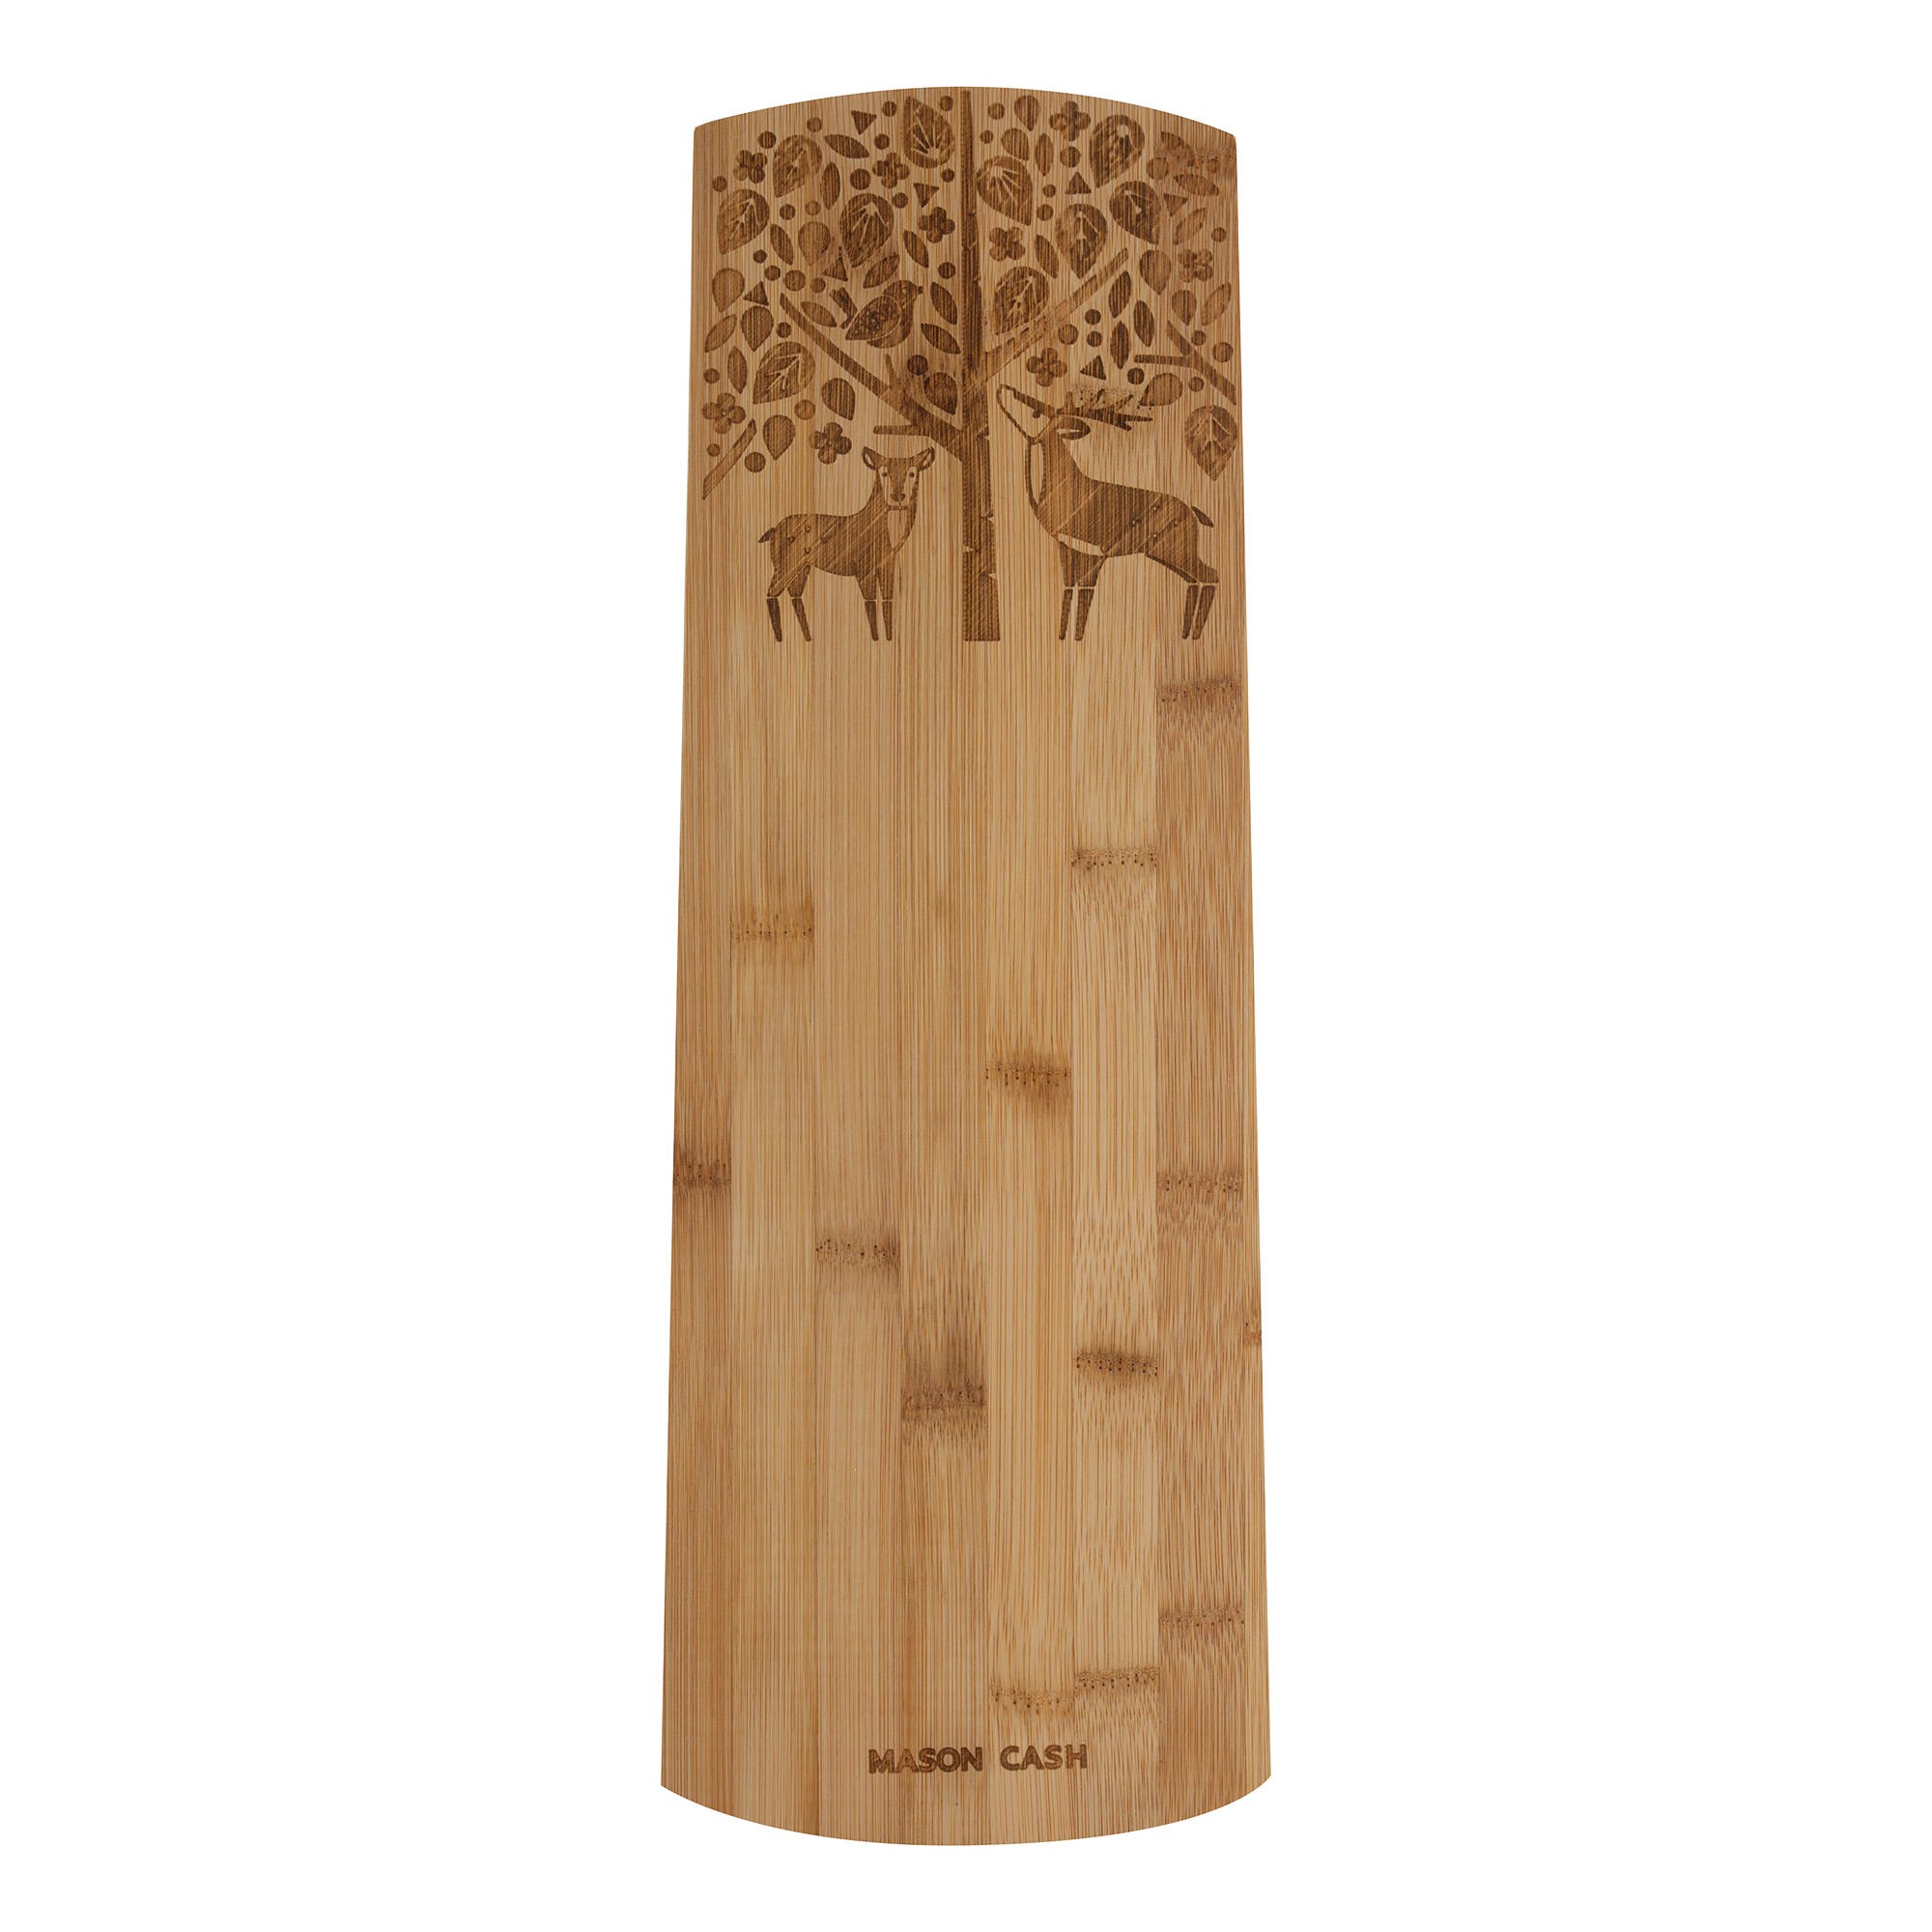 Servírovací prkénko IN THE FOREST bambus motiv jelen 45 x 16 cm - MASON CASH